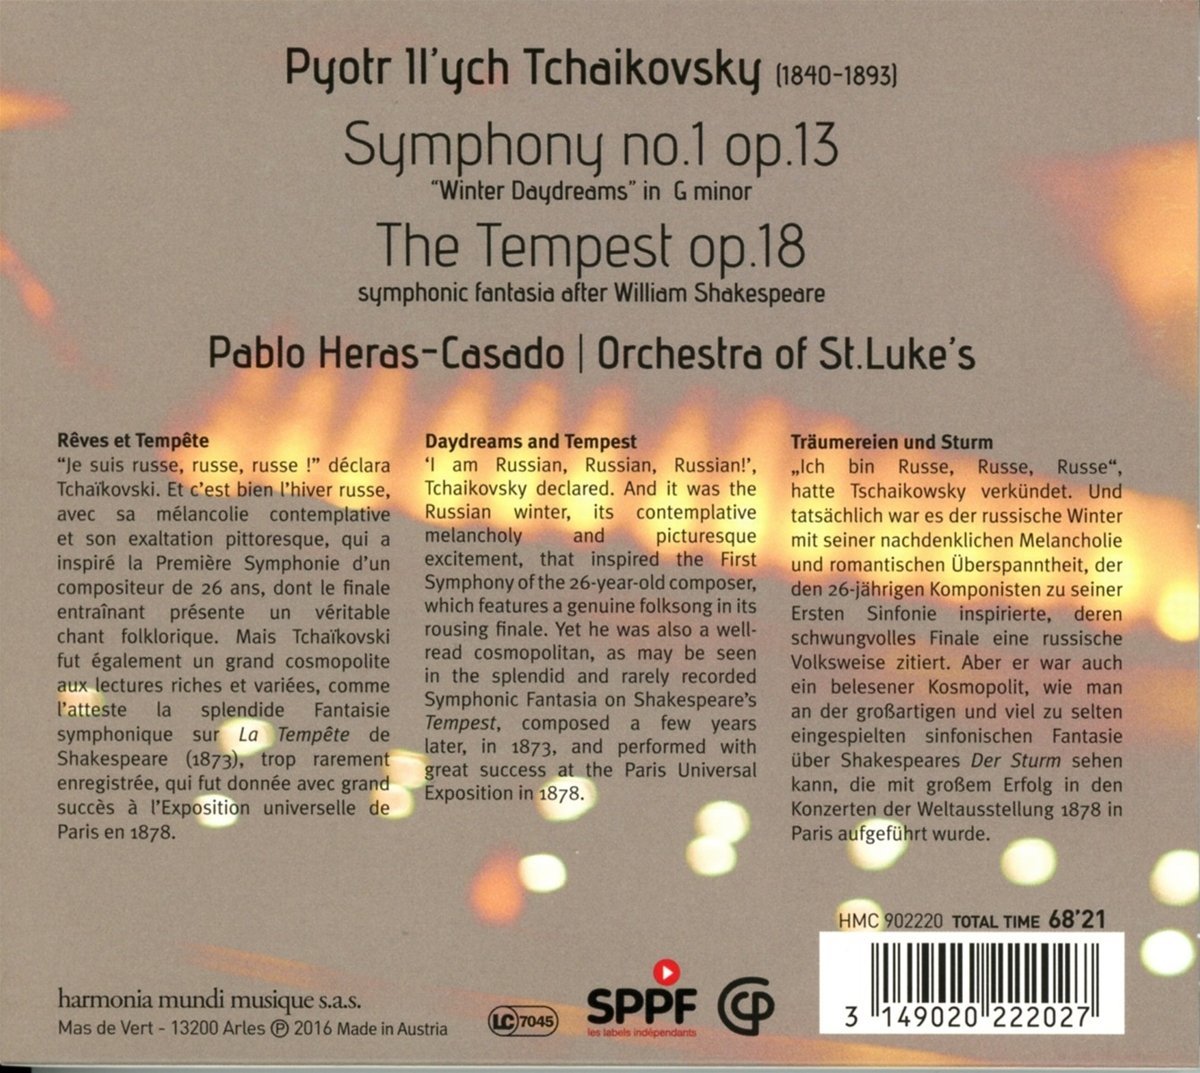 Tchaikovsky: Symphony No. 1 \'Winter Dreams\' Op.13; The Tempest Op.18 | The Orchestra of St Lukes, Pyotr Ilyich Tchaikovsky, Pablo Heras-Casado